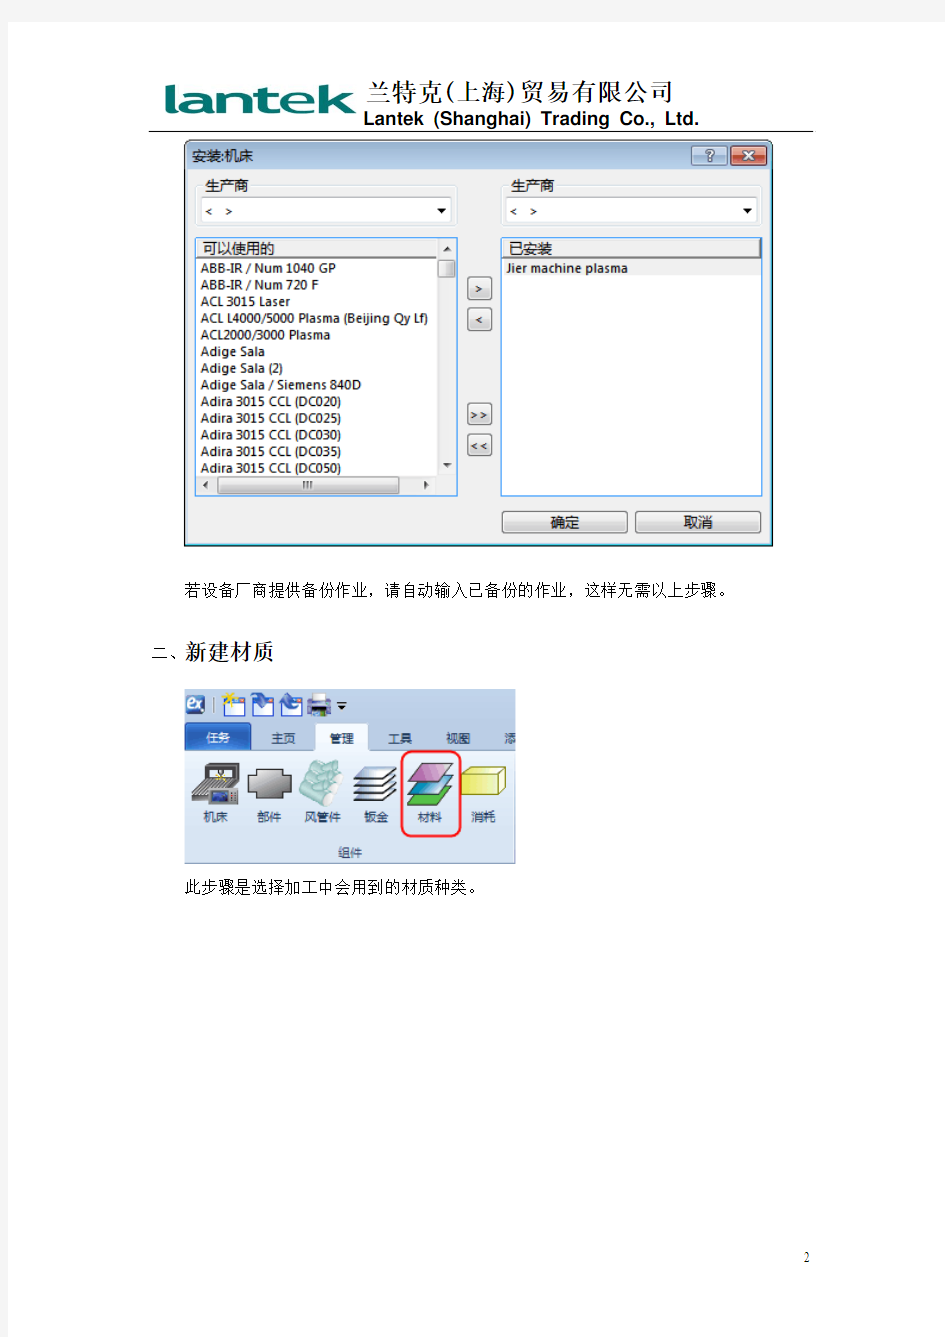 兰特克风管软件简易使用手册(2012)